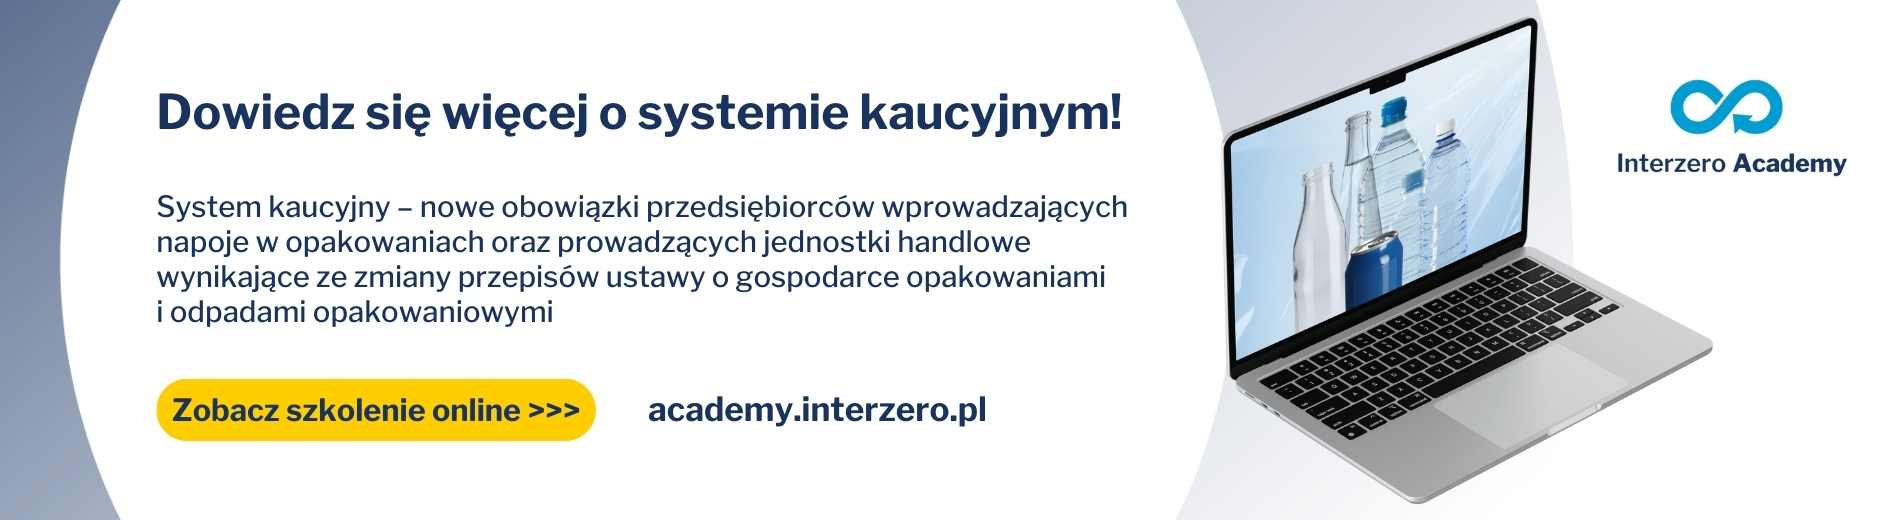 system kaucyjny interzero academy